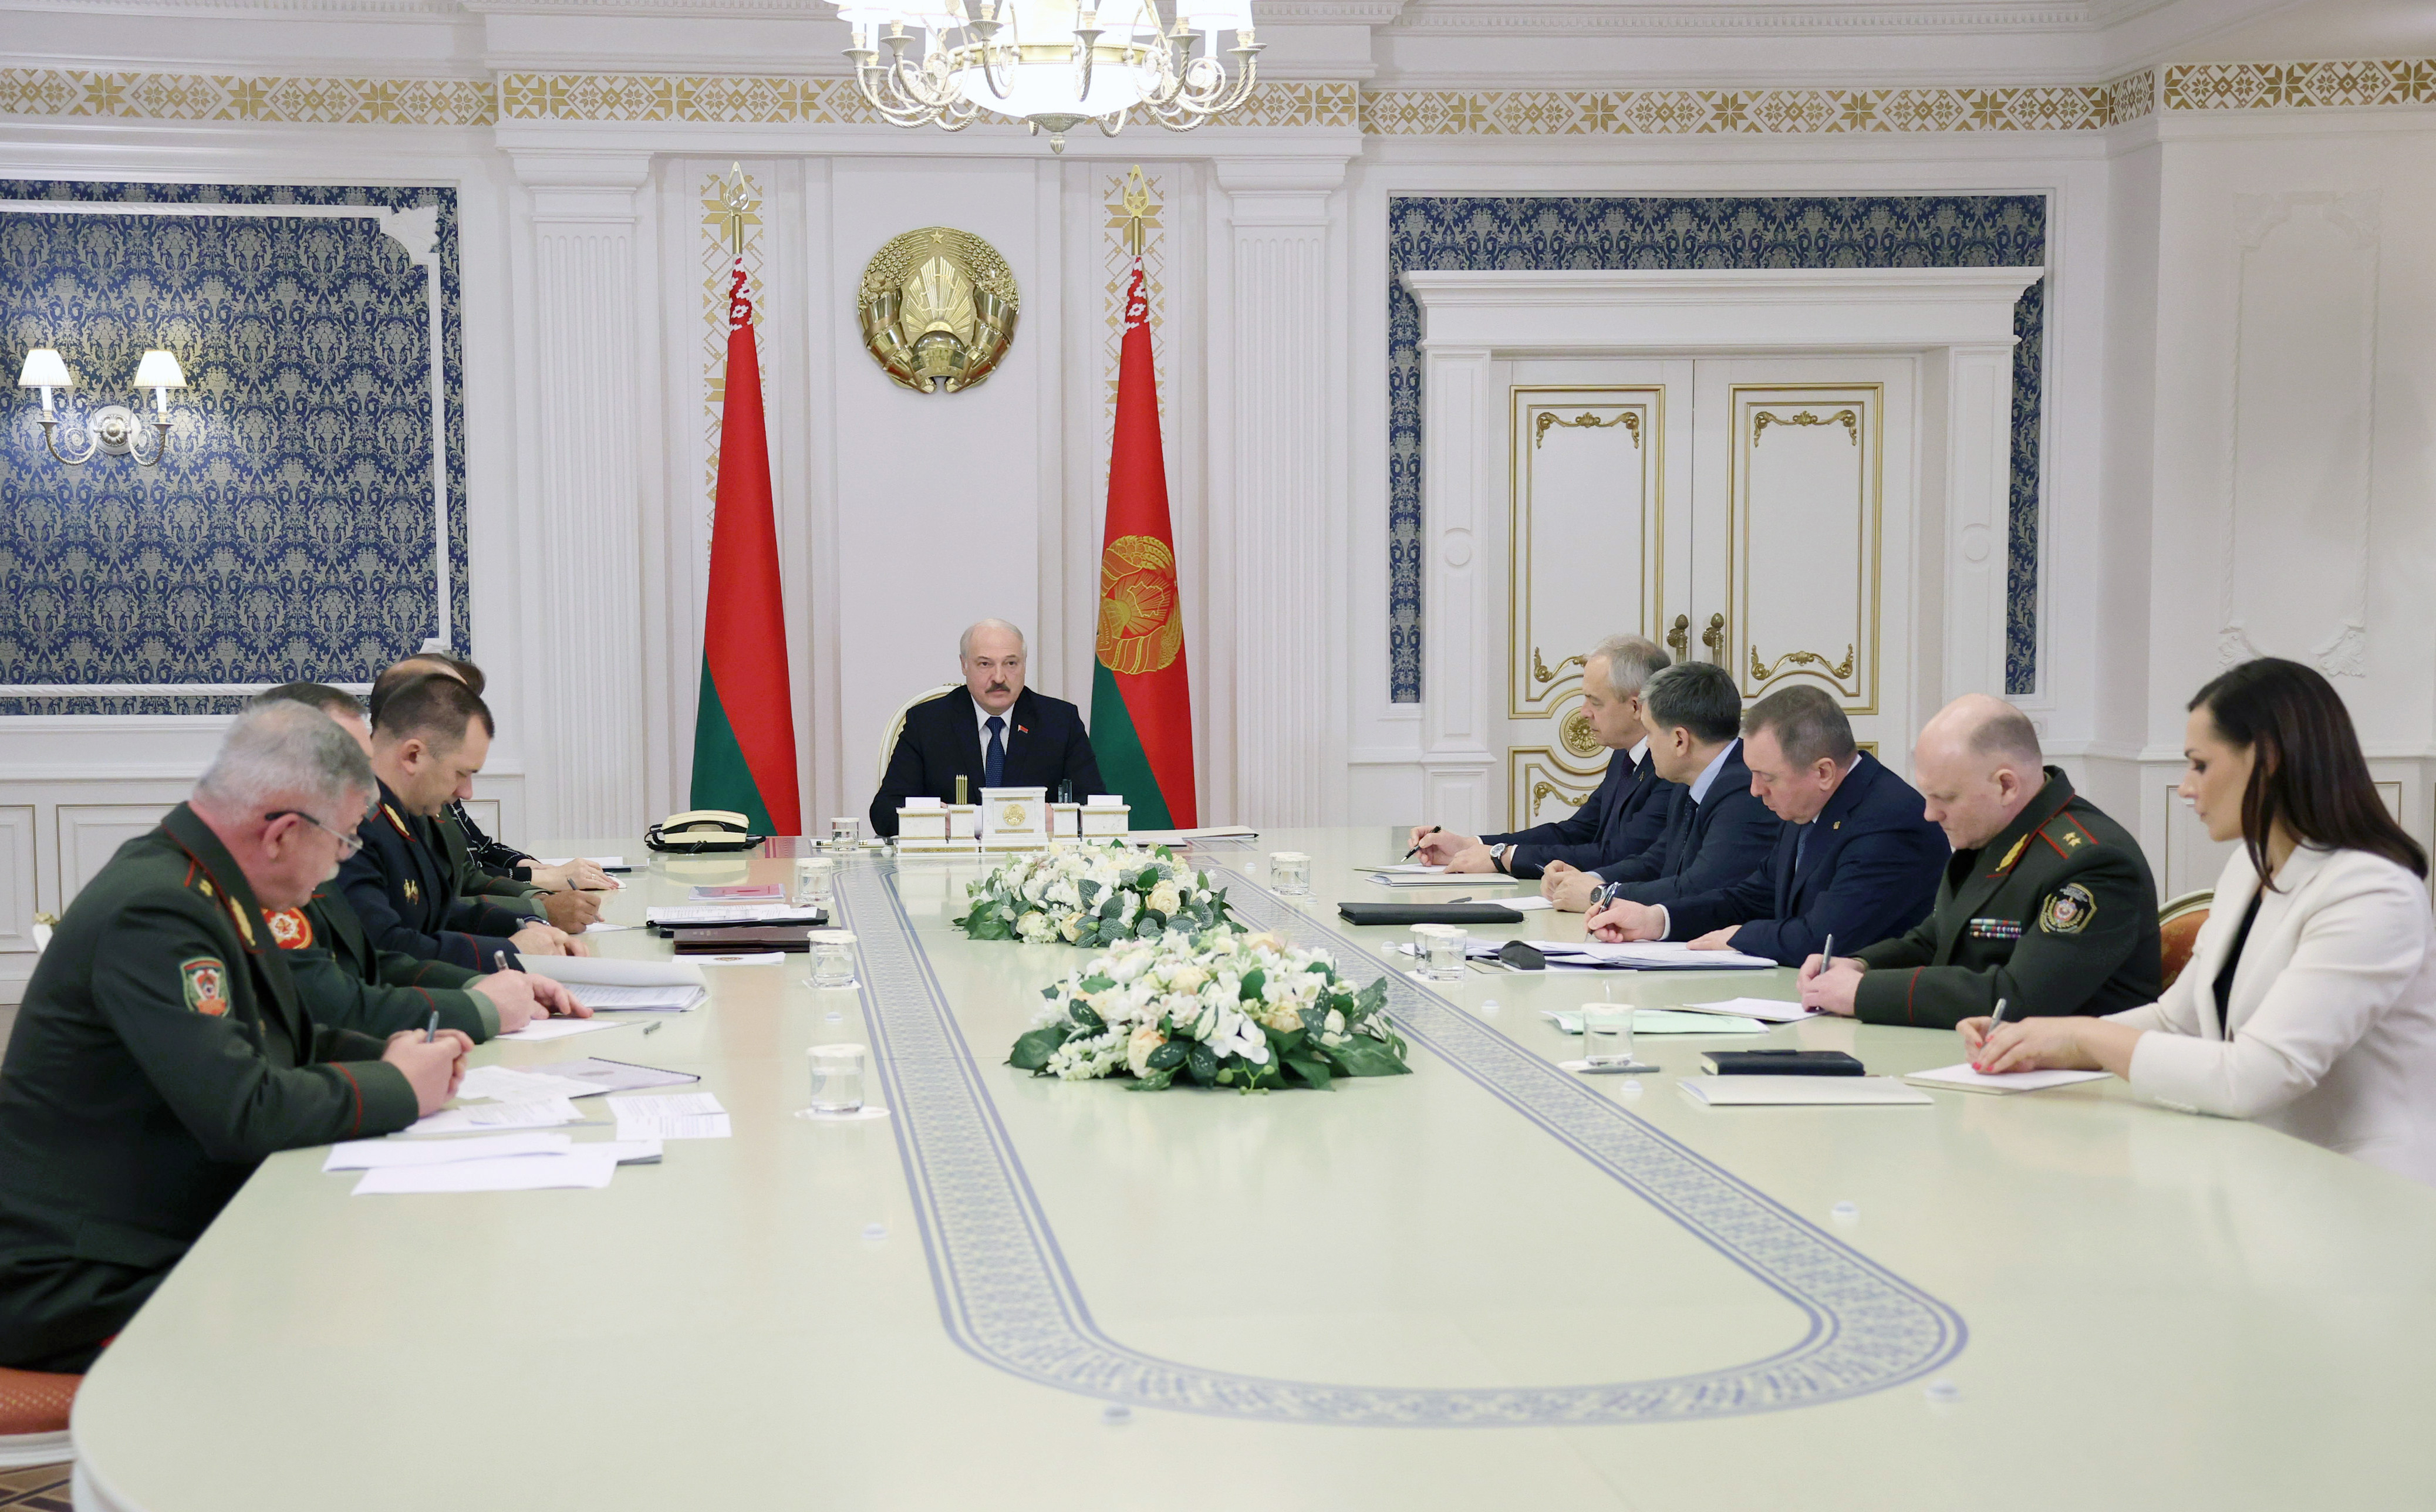 Der belarusische Präsident Alexander Lukaschenka (Mitte) hält eine Sitzung zur Lage an der beralrusisch-polnischen Grenze ab. 